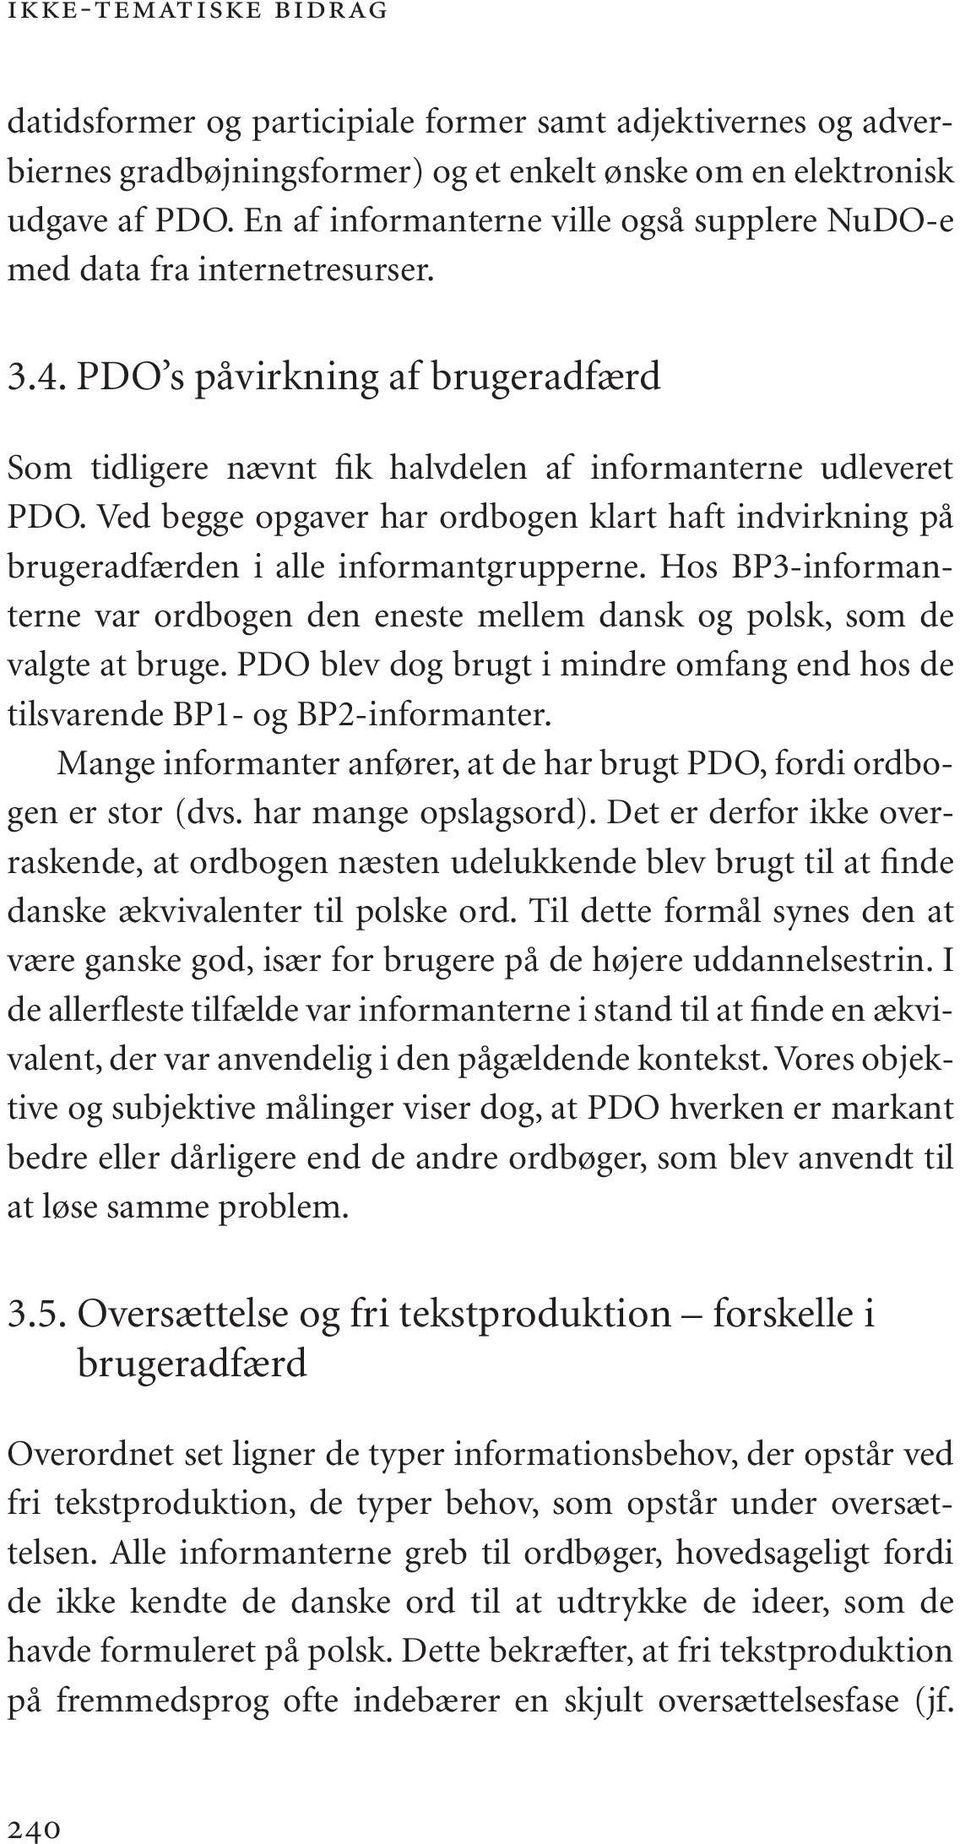 Ved begge opgaver har ordbogen klart haft indvirkning på brugeradfærden i alle informantgrupperne. Hos BP3-informanterne var ordbogen den eneste mellem dansk og polsk, som de valgte at bruge.